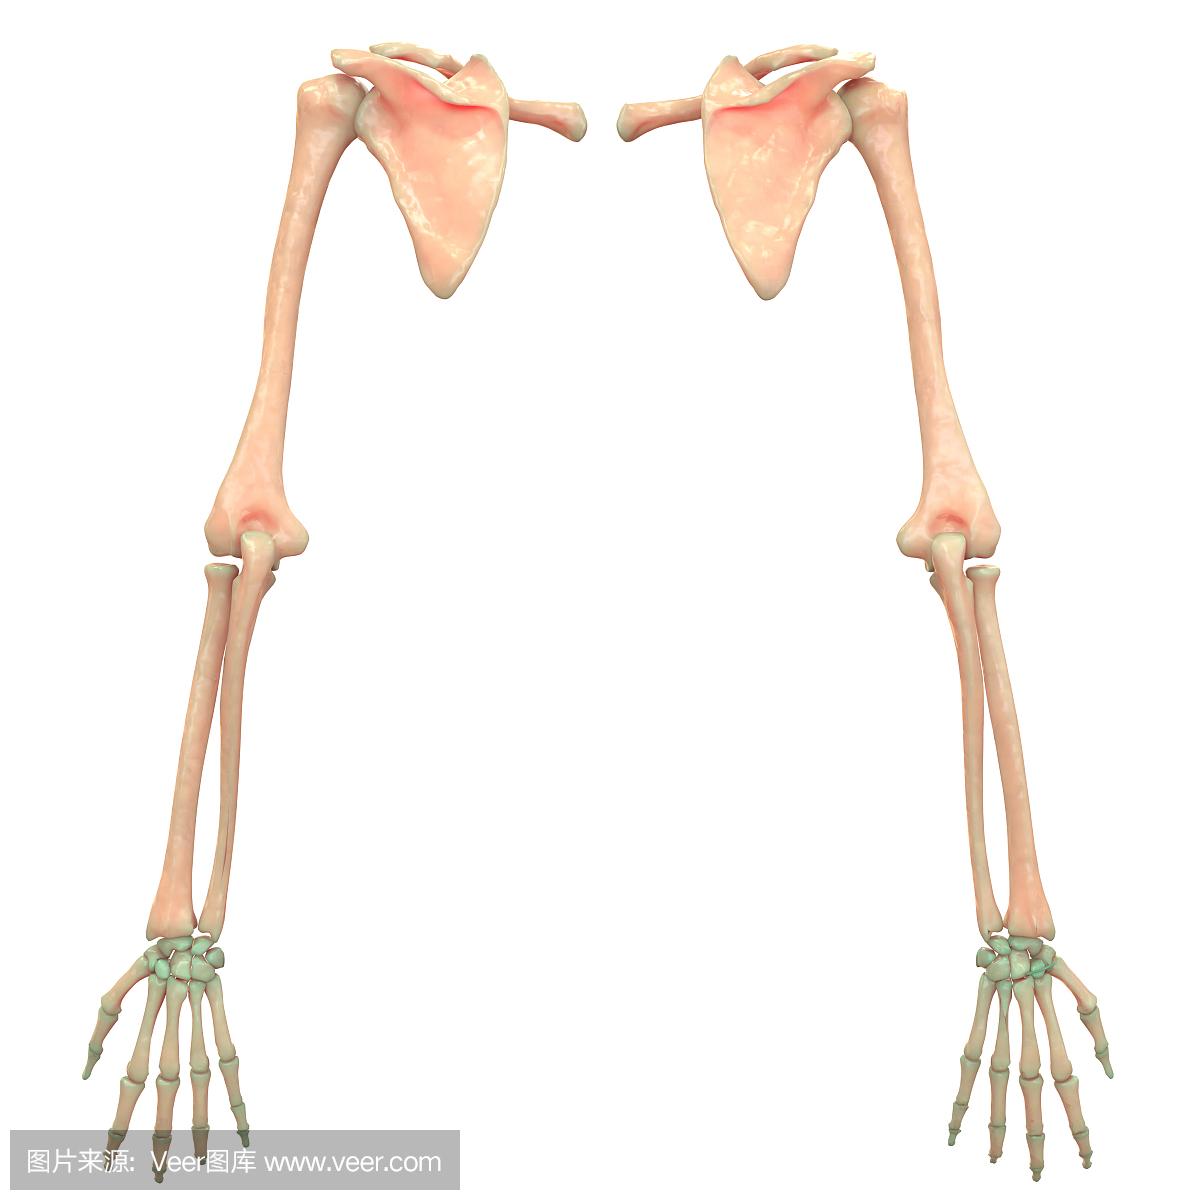 人体骨骼系统上肢解剖学(后视图)